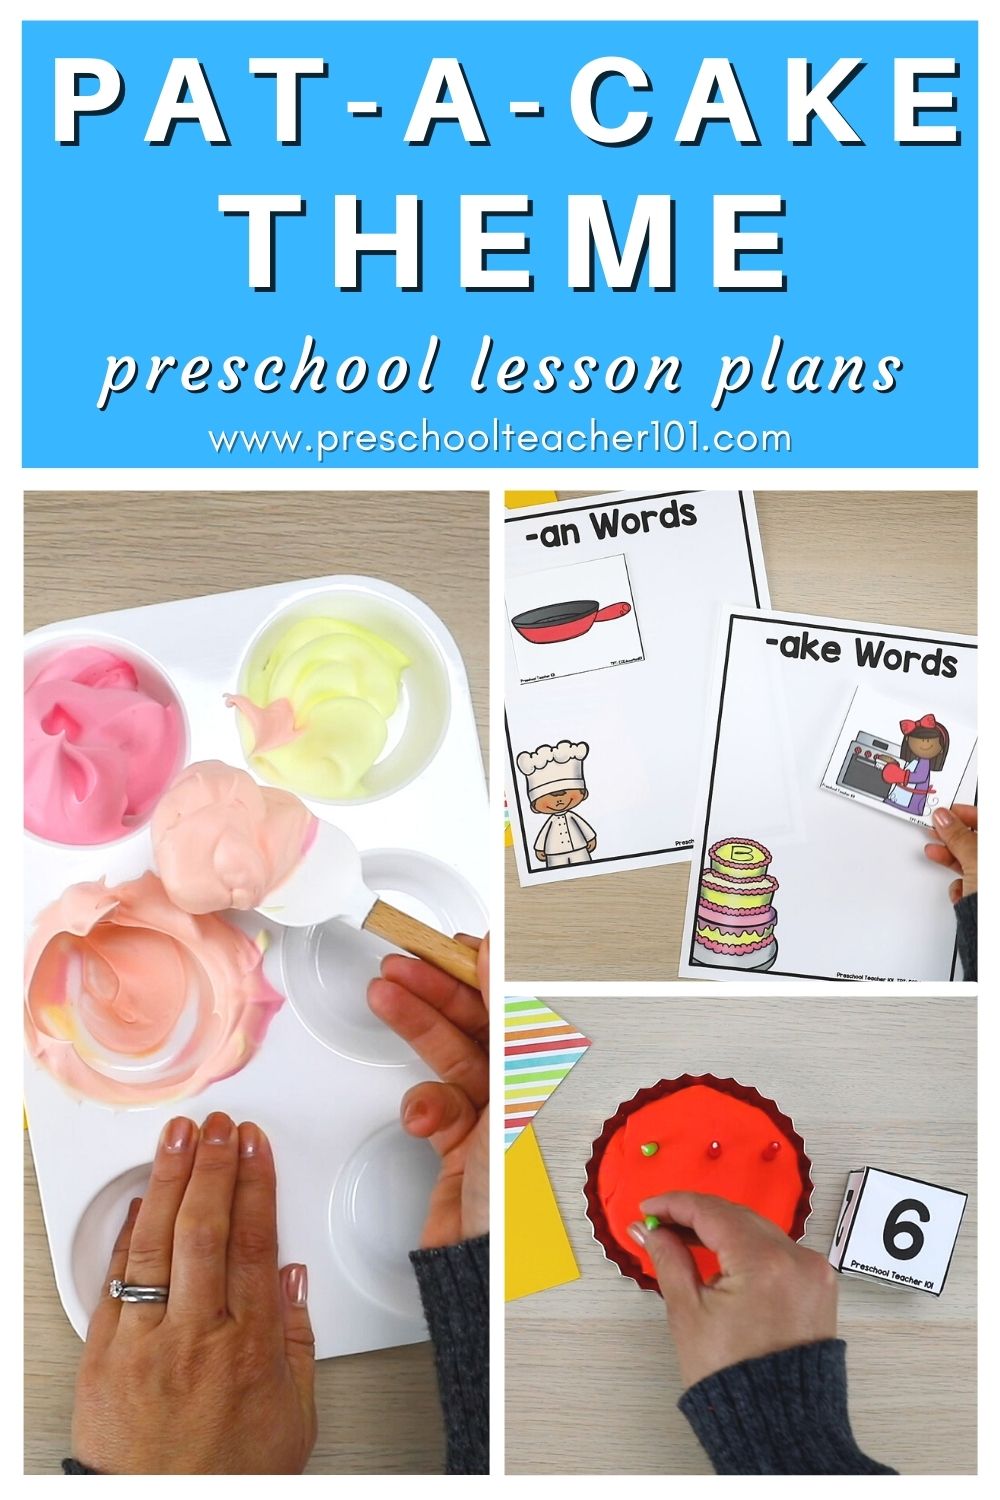 Pat-A-Cake Theme Preschool Lesson Plans